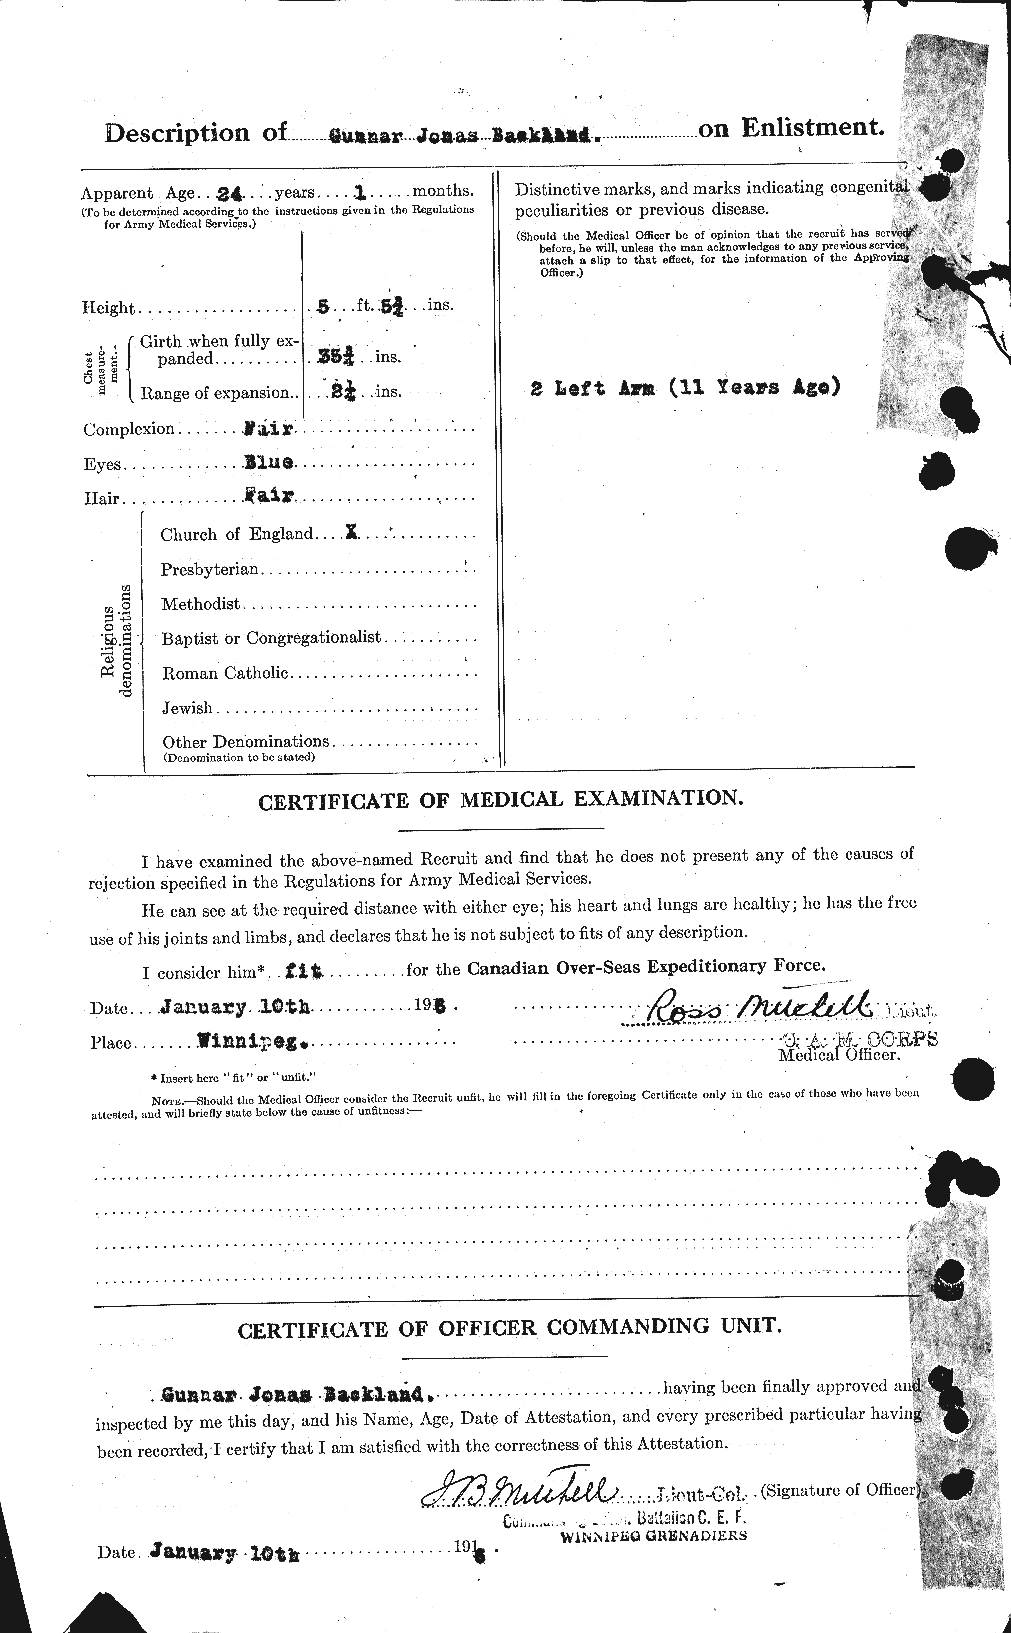 Dossiers du Personnel de la Première Guerre mondiale - CEC 217976b